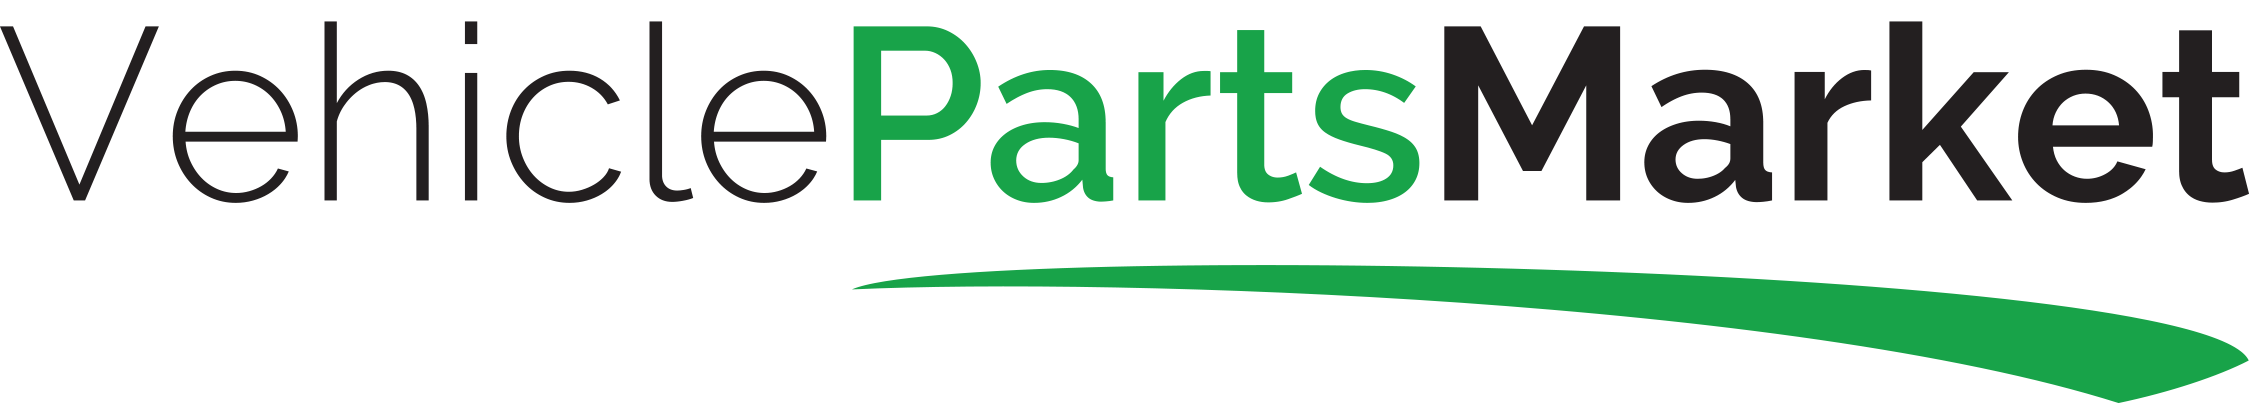 Vehicle Parts Market (VPM)